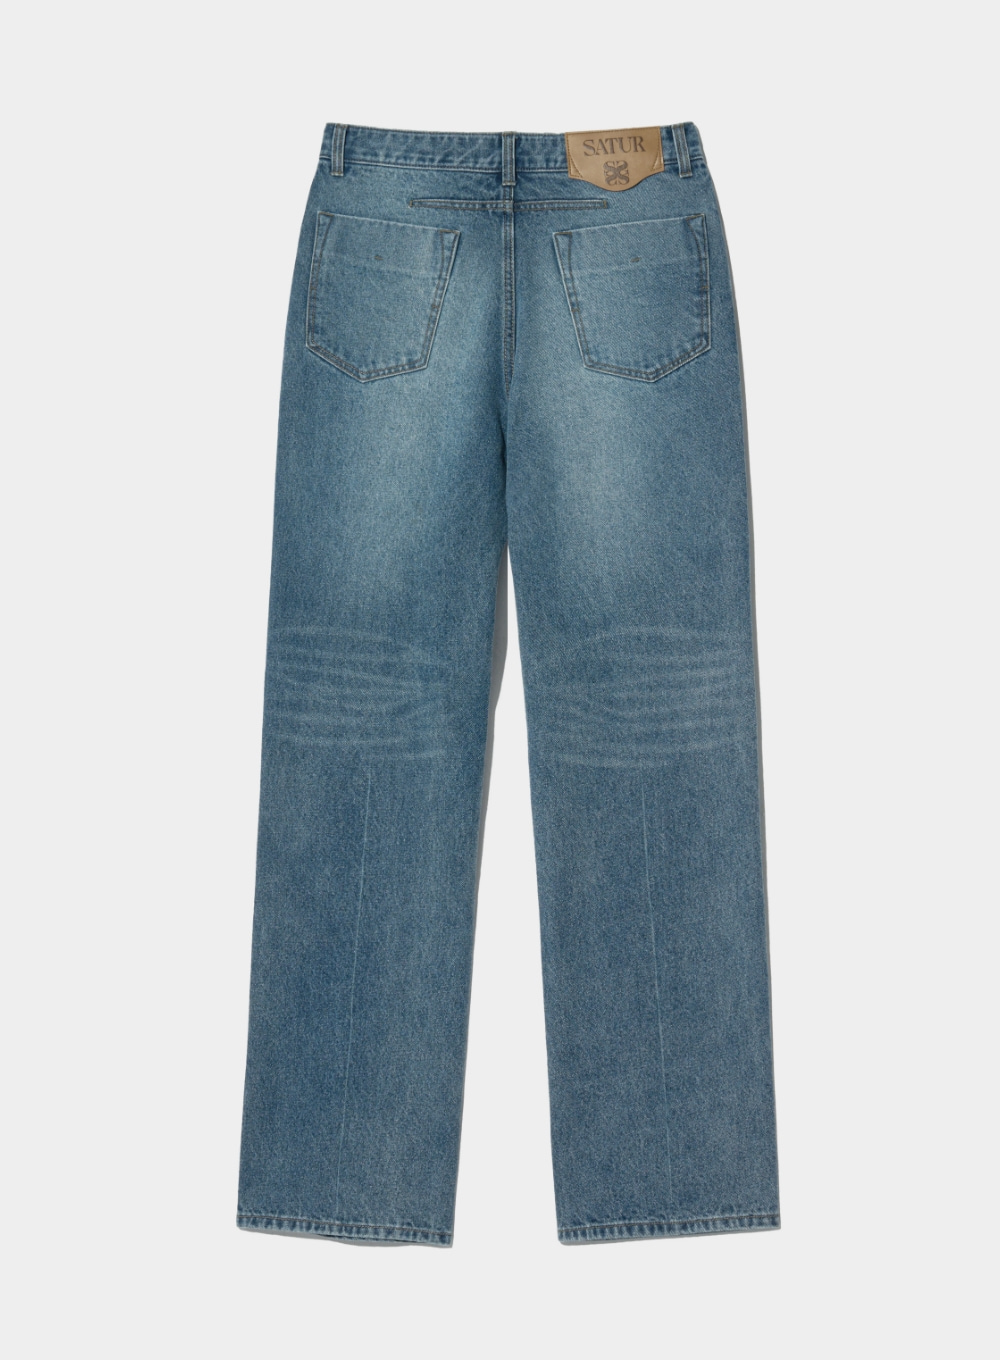 Classic Chelsea Denim Pants - Medium Washed Blue